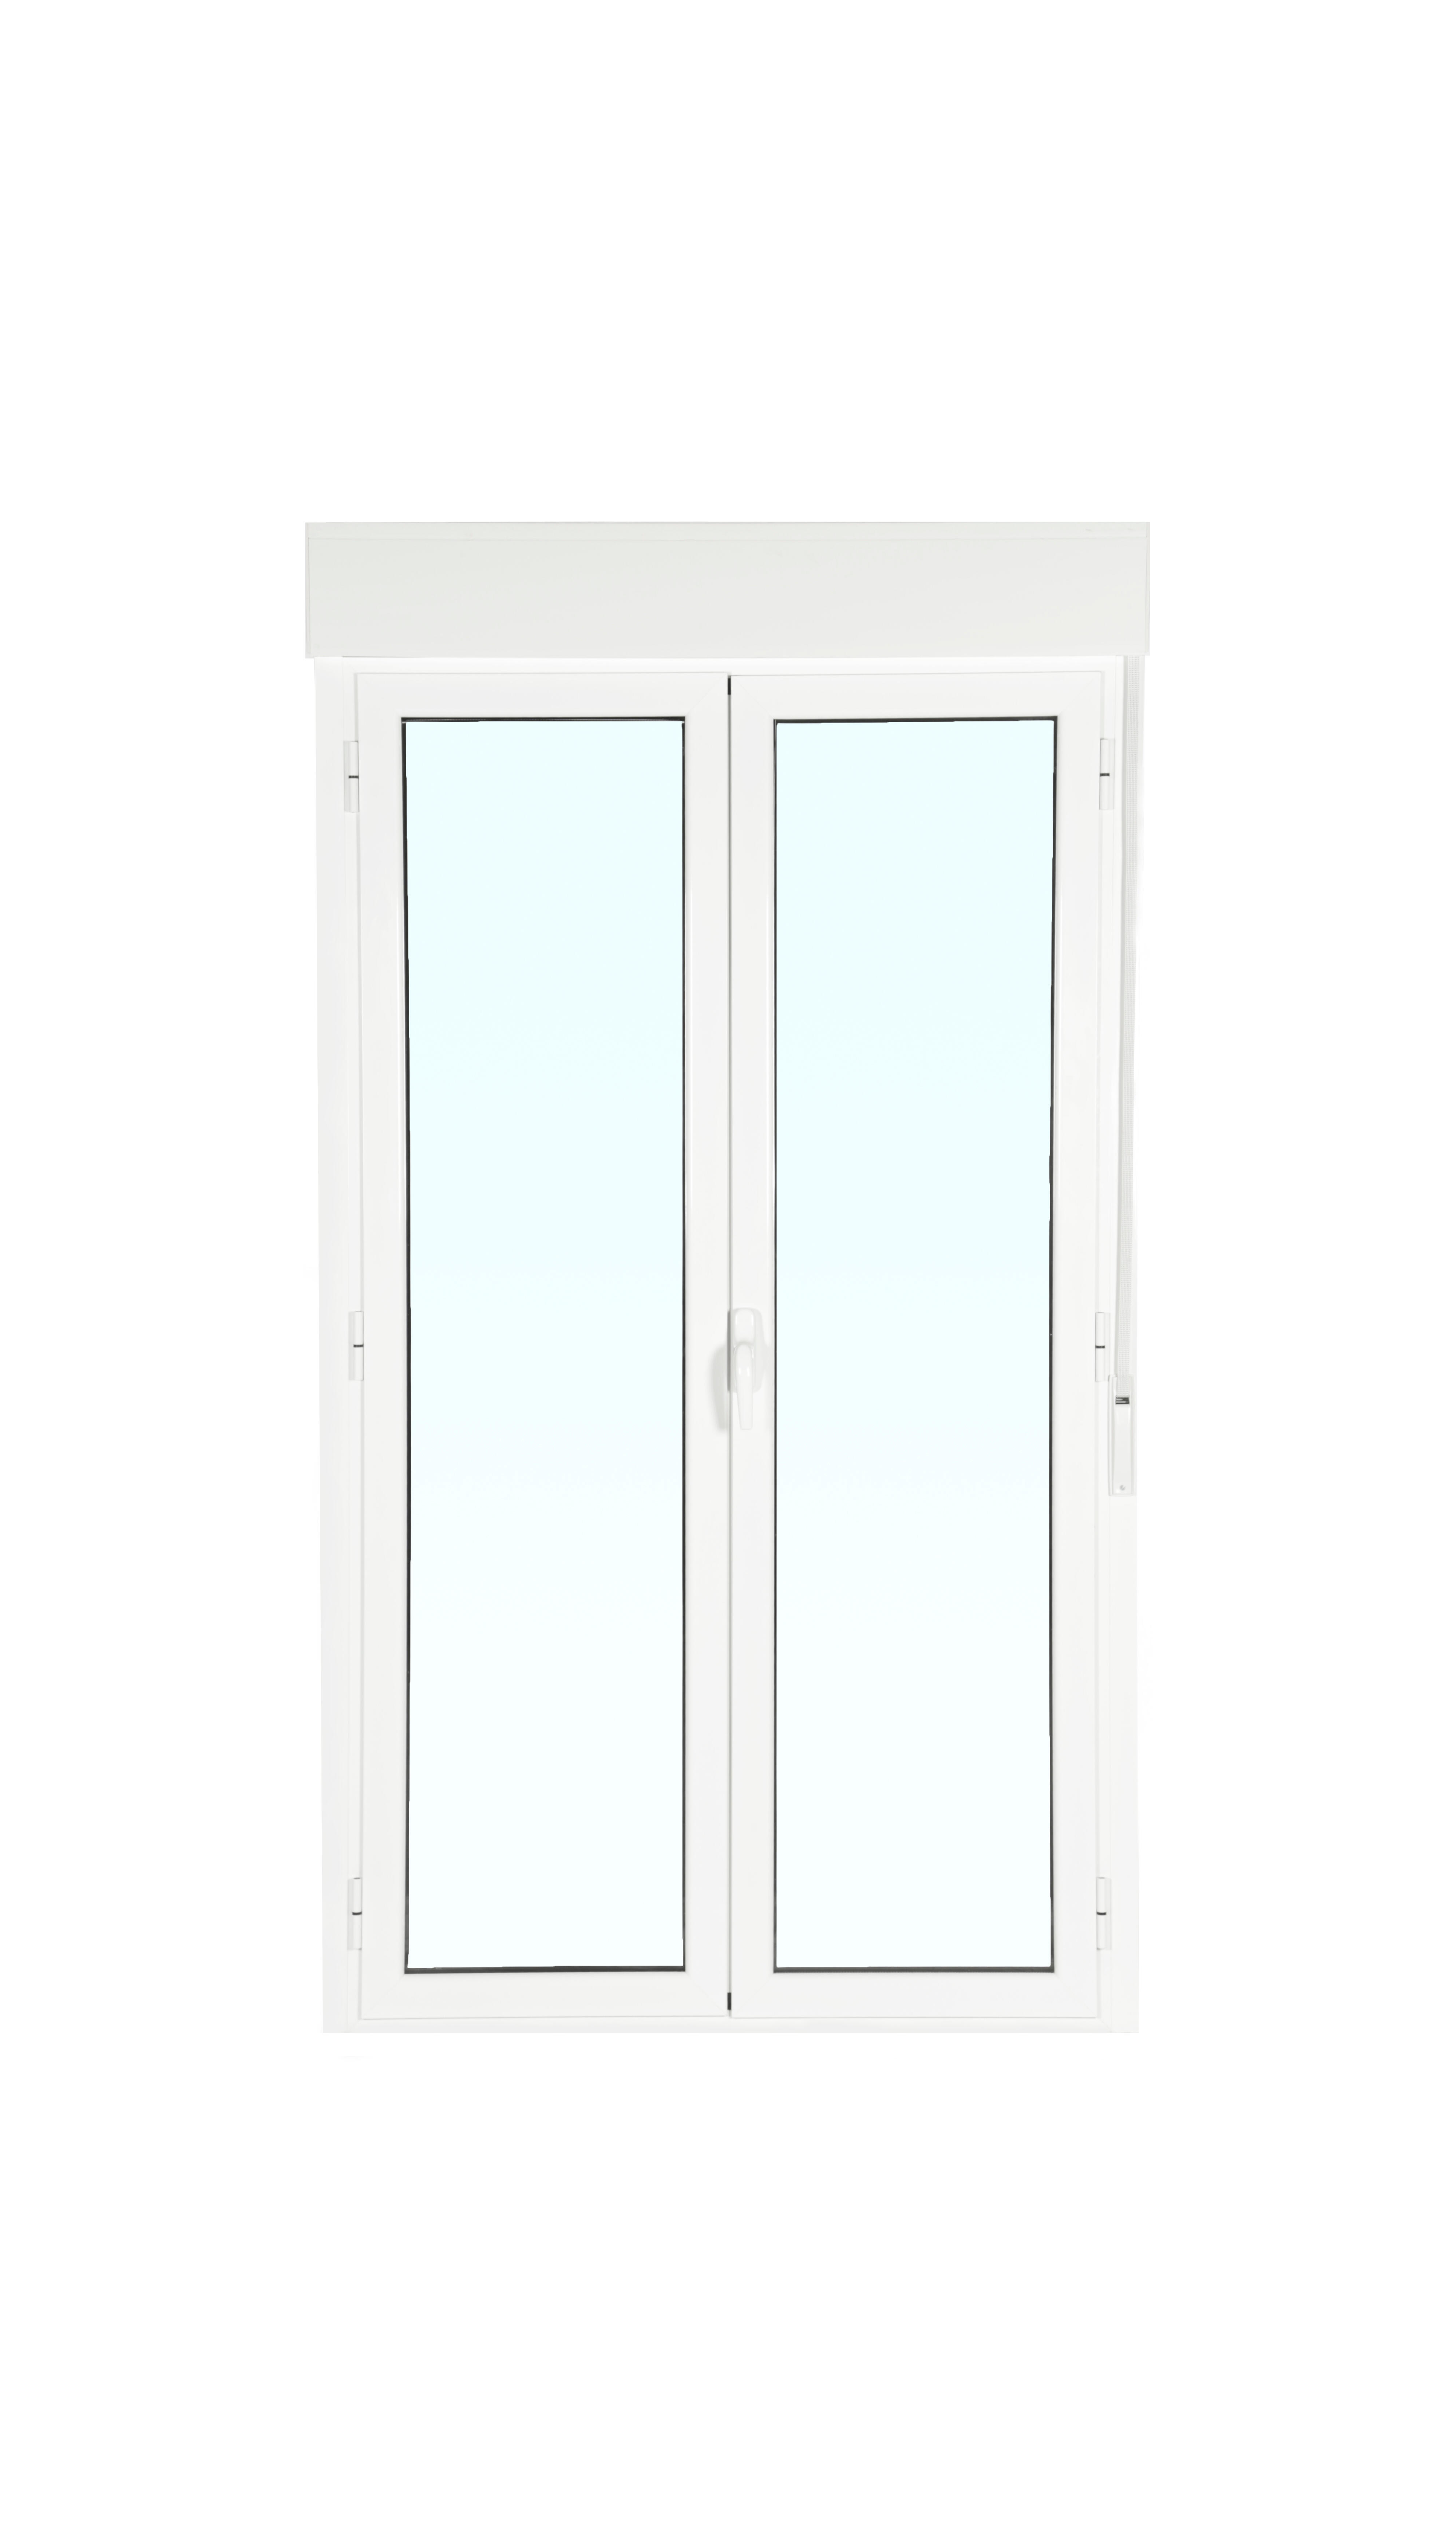 Balconera aluminio artens blanca practicable con persiana de 130x229cm